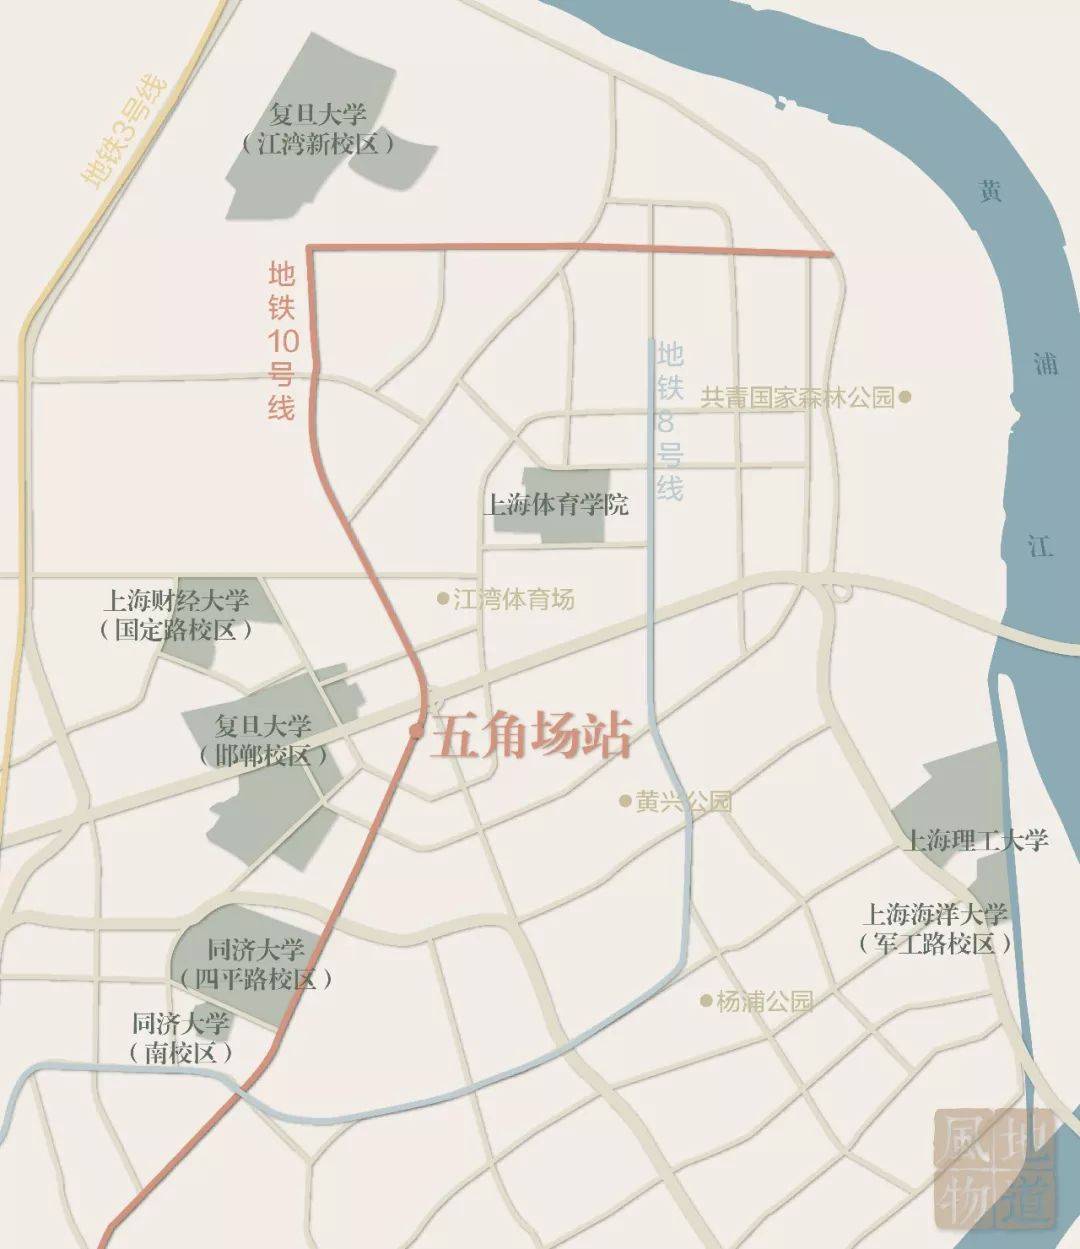 北京五道口是宇宙中心?上海五角场第一个不服!